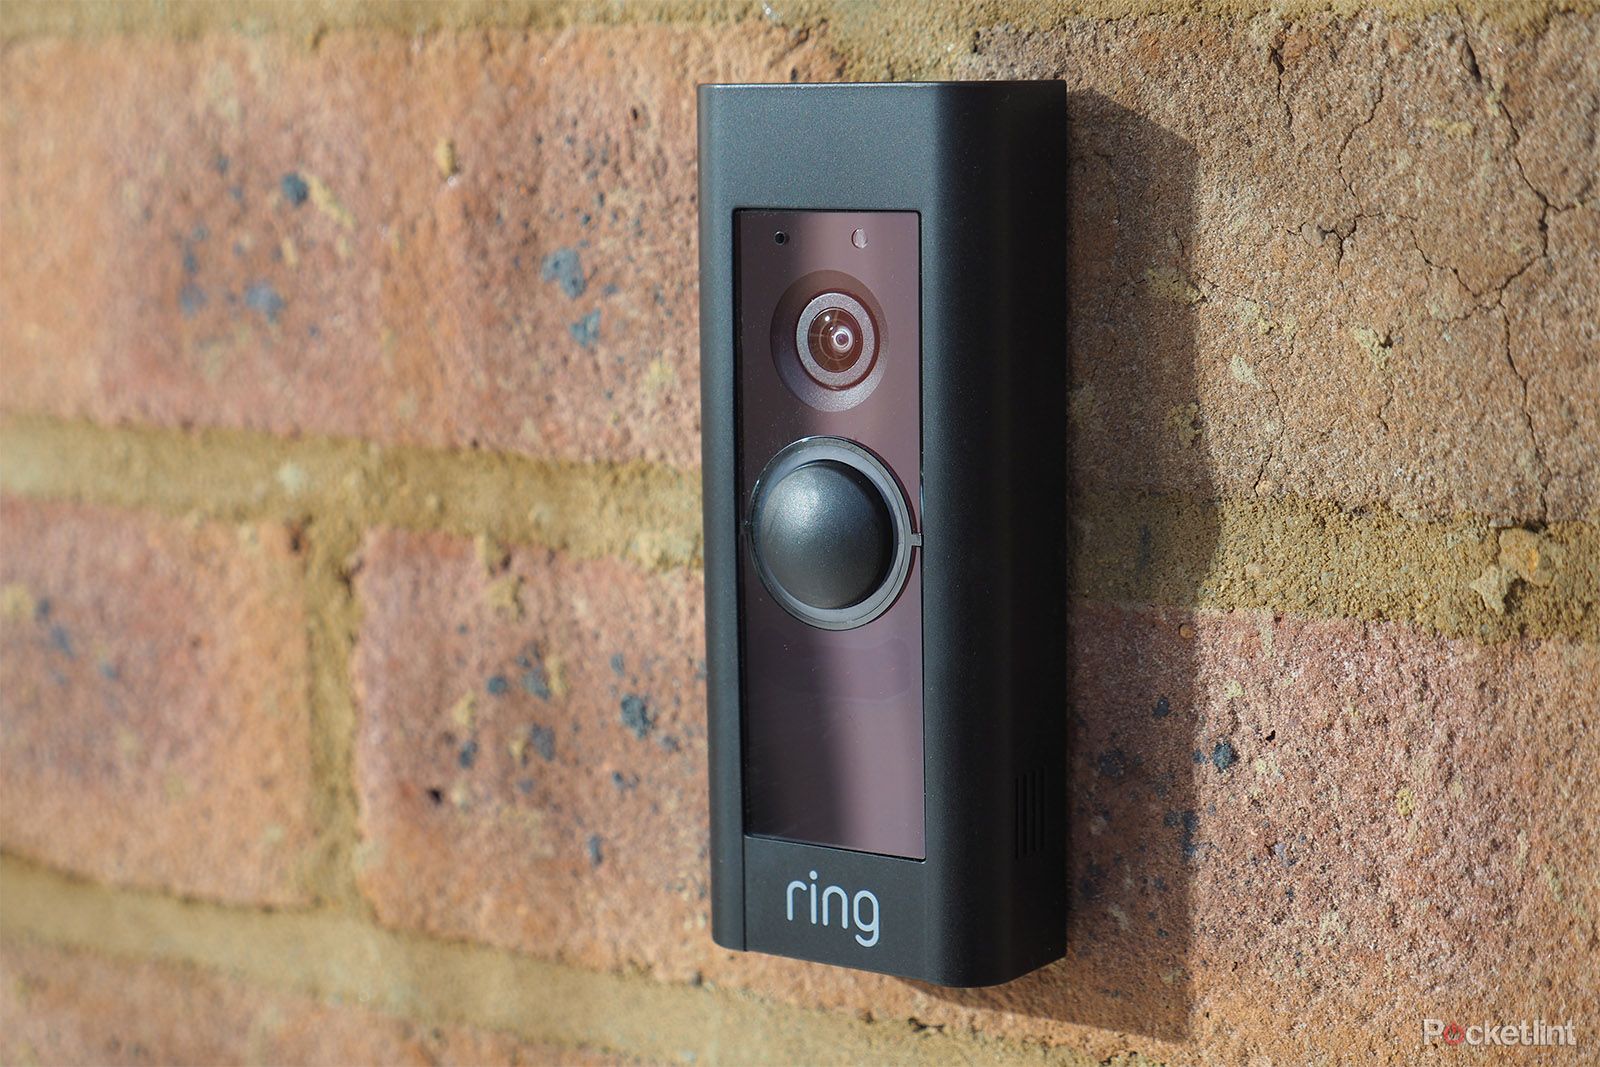 Video Doorbell Pro 2 – Ring